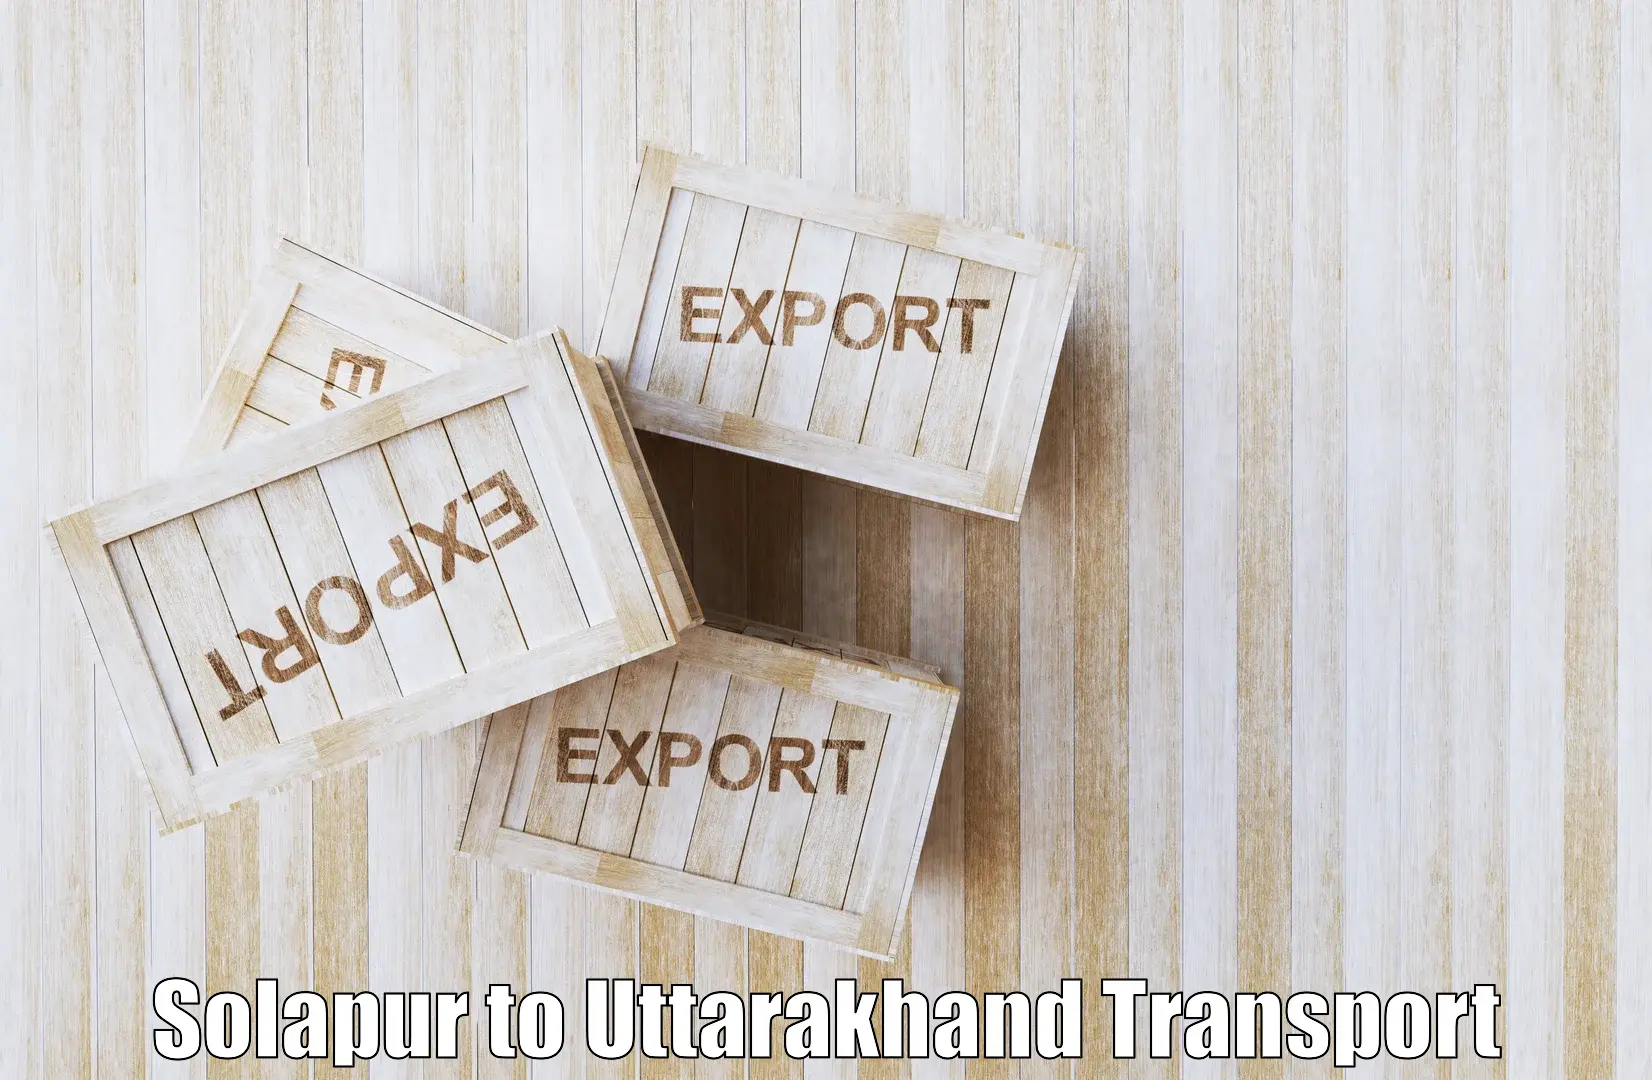 Land transport services Solapur to Kotdwara